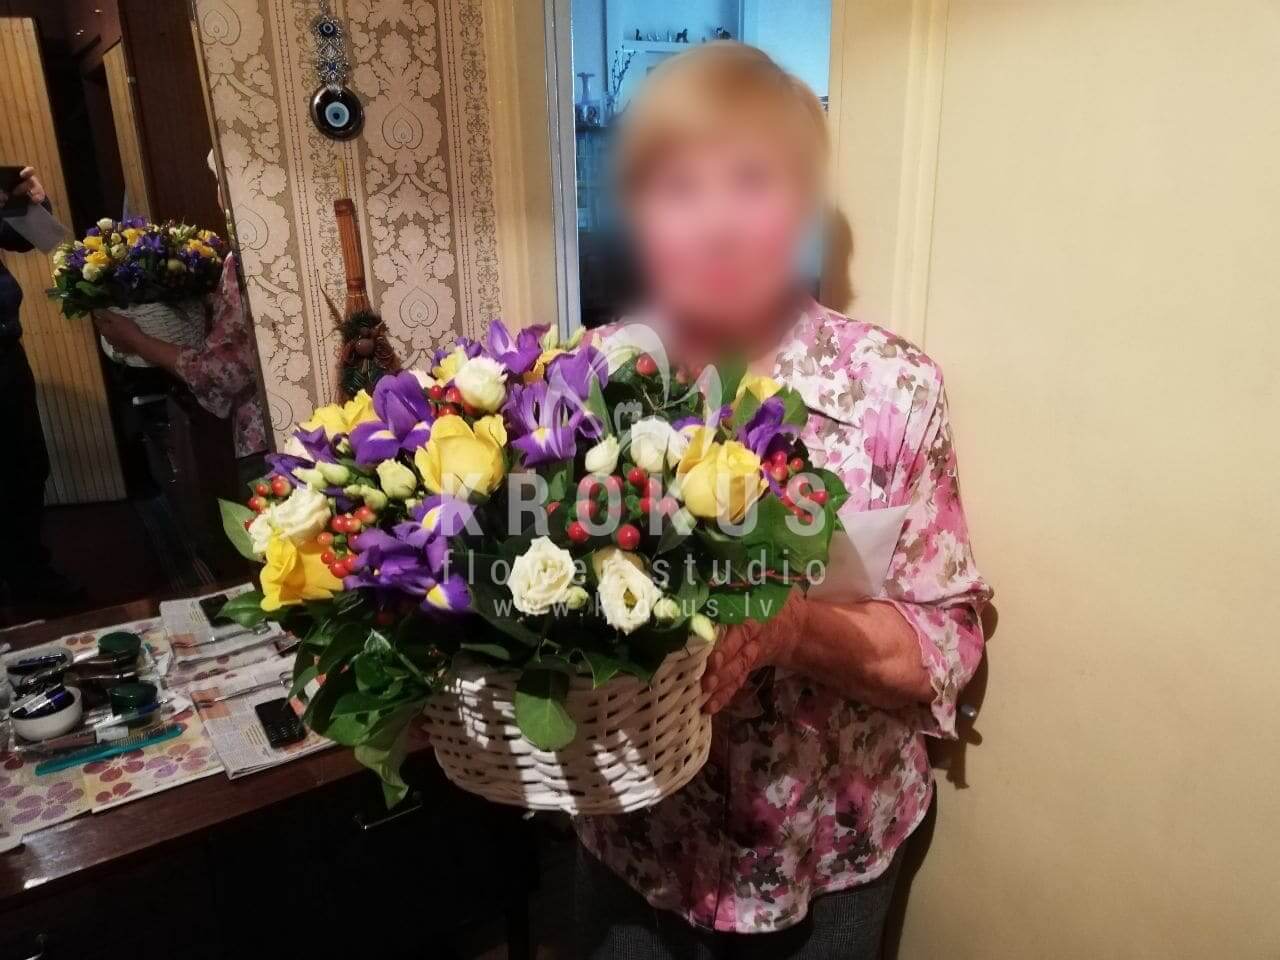 Доставка цветов в город Рига (папоротникирисыальстромериягиперикумсалалжелтые розы)